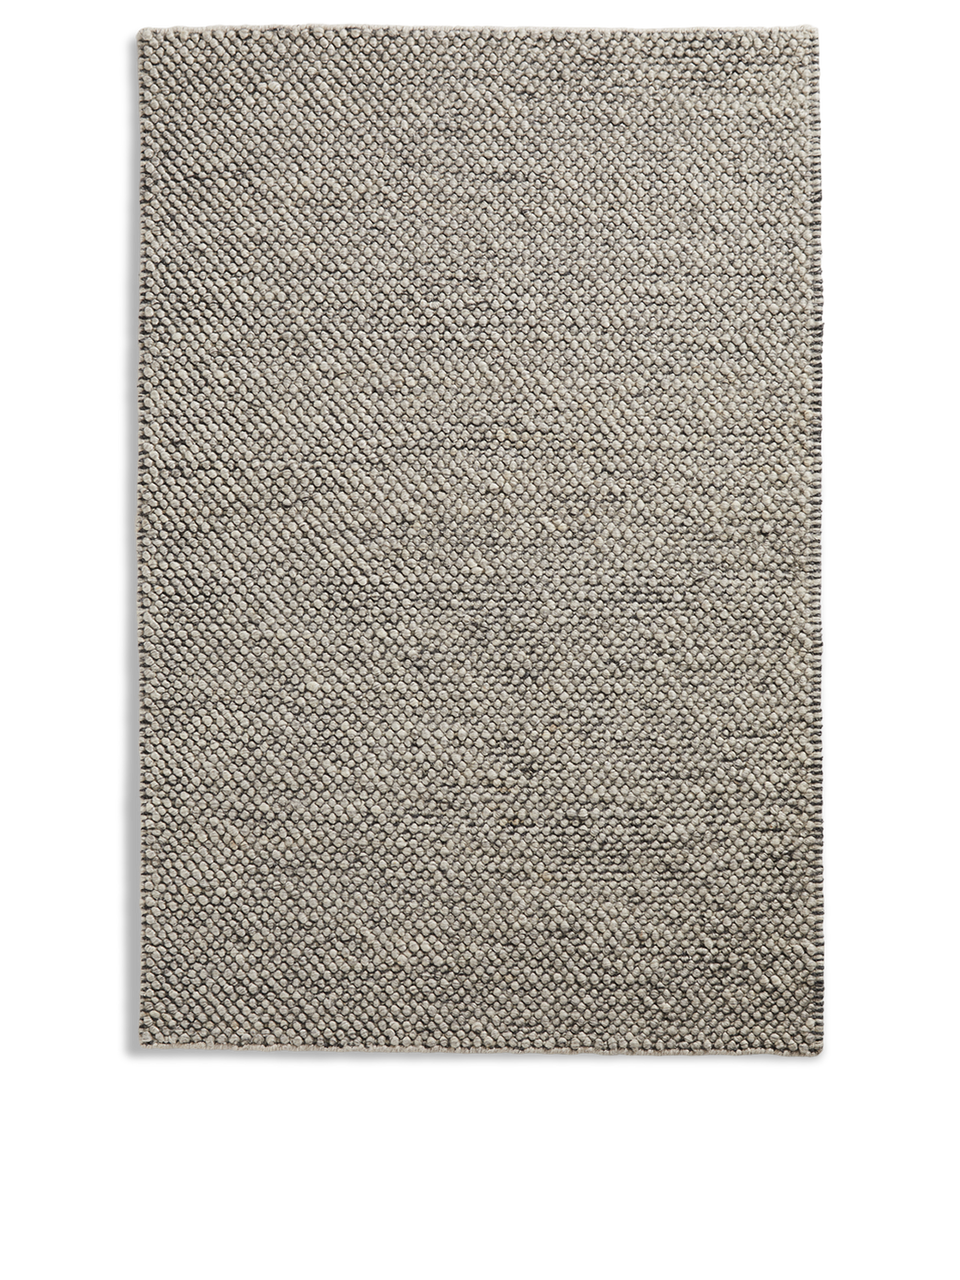 tact rug 6.5’ x 9.8’ dark grey